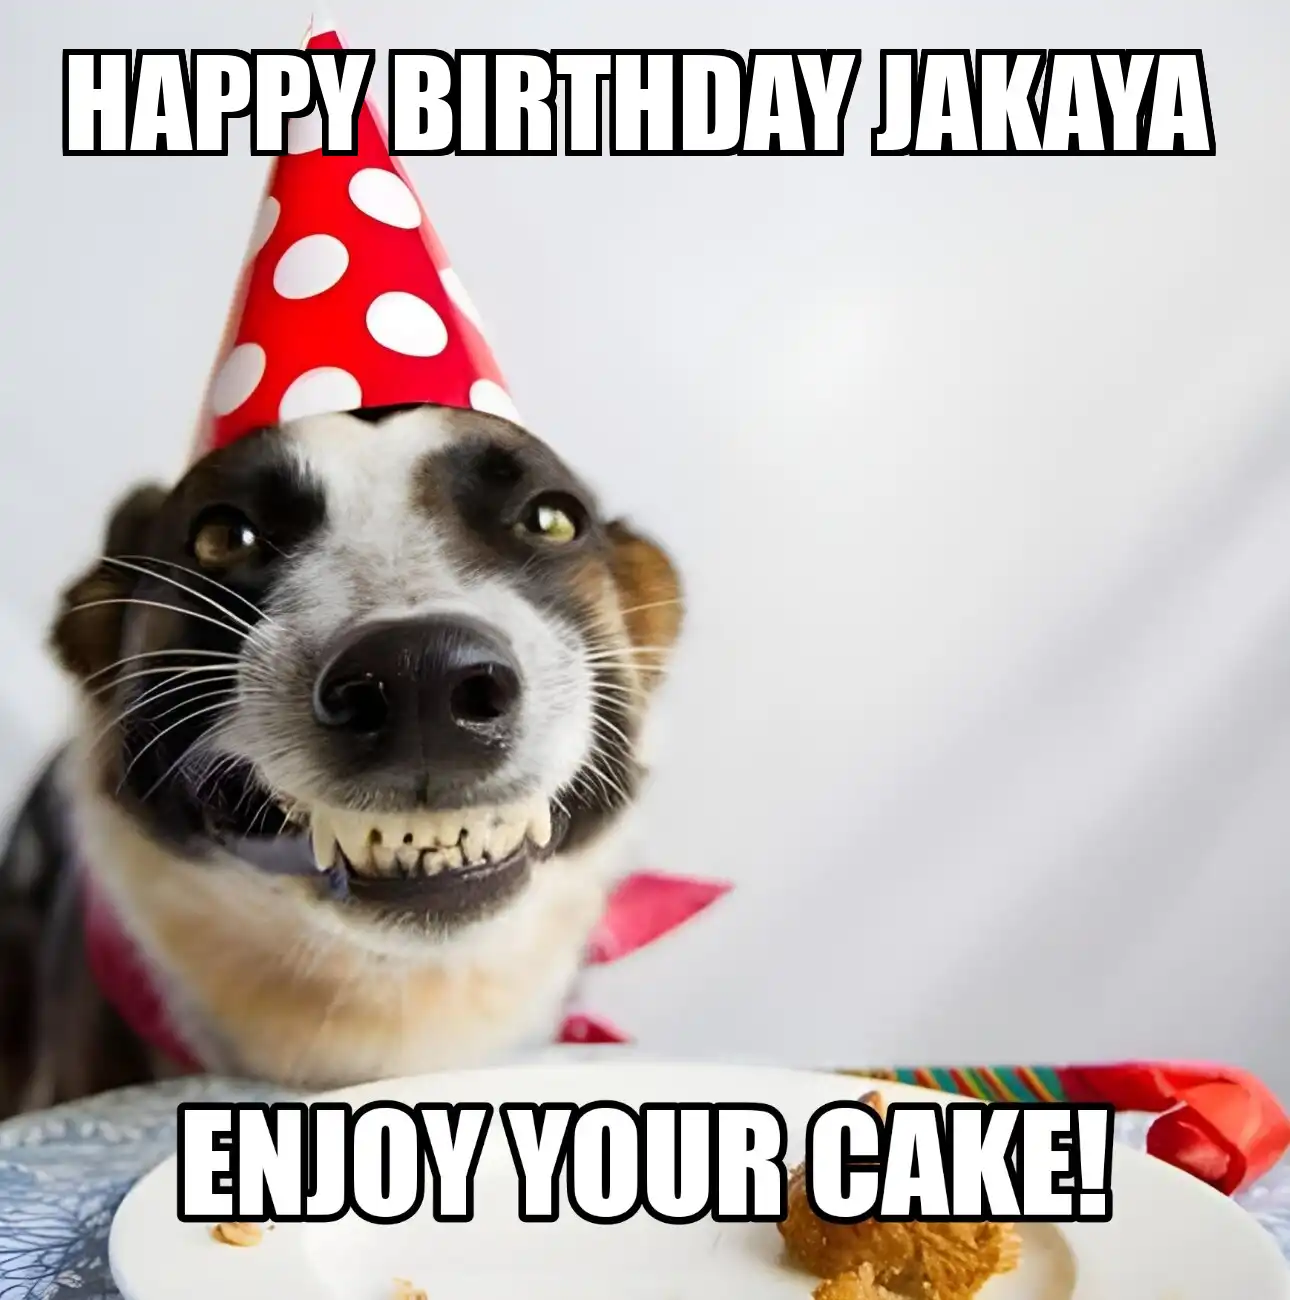 Happy Birthday Jakaya Enjoy Your Cake Dog Meme